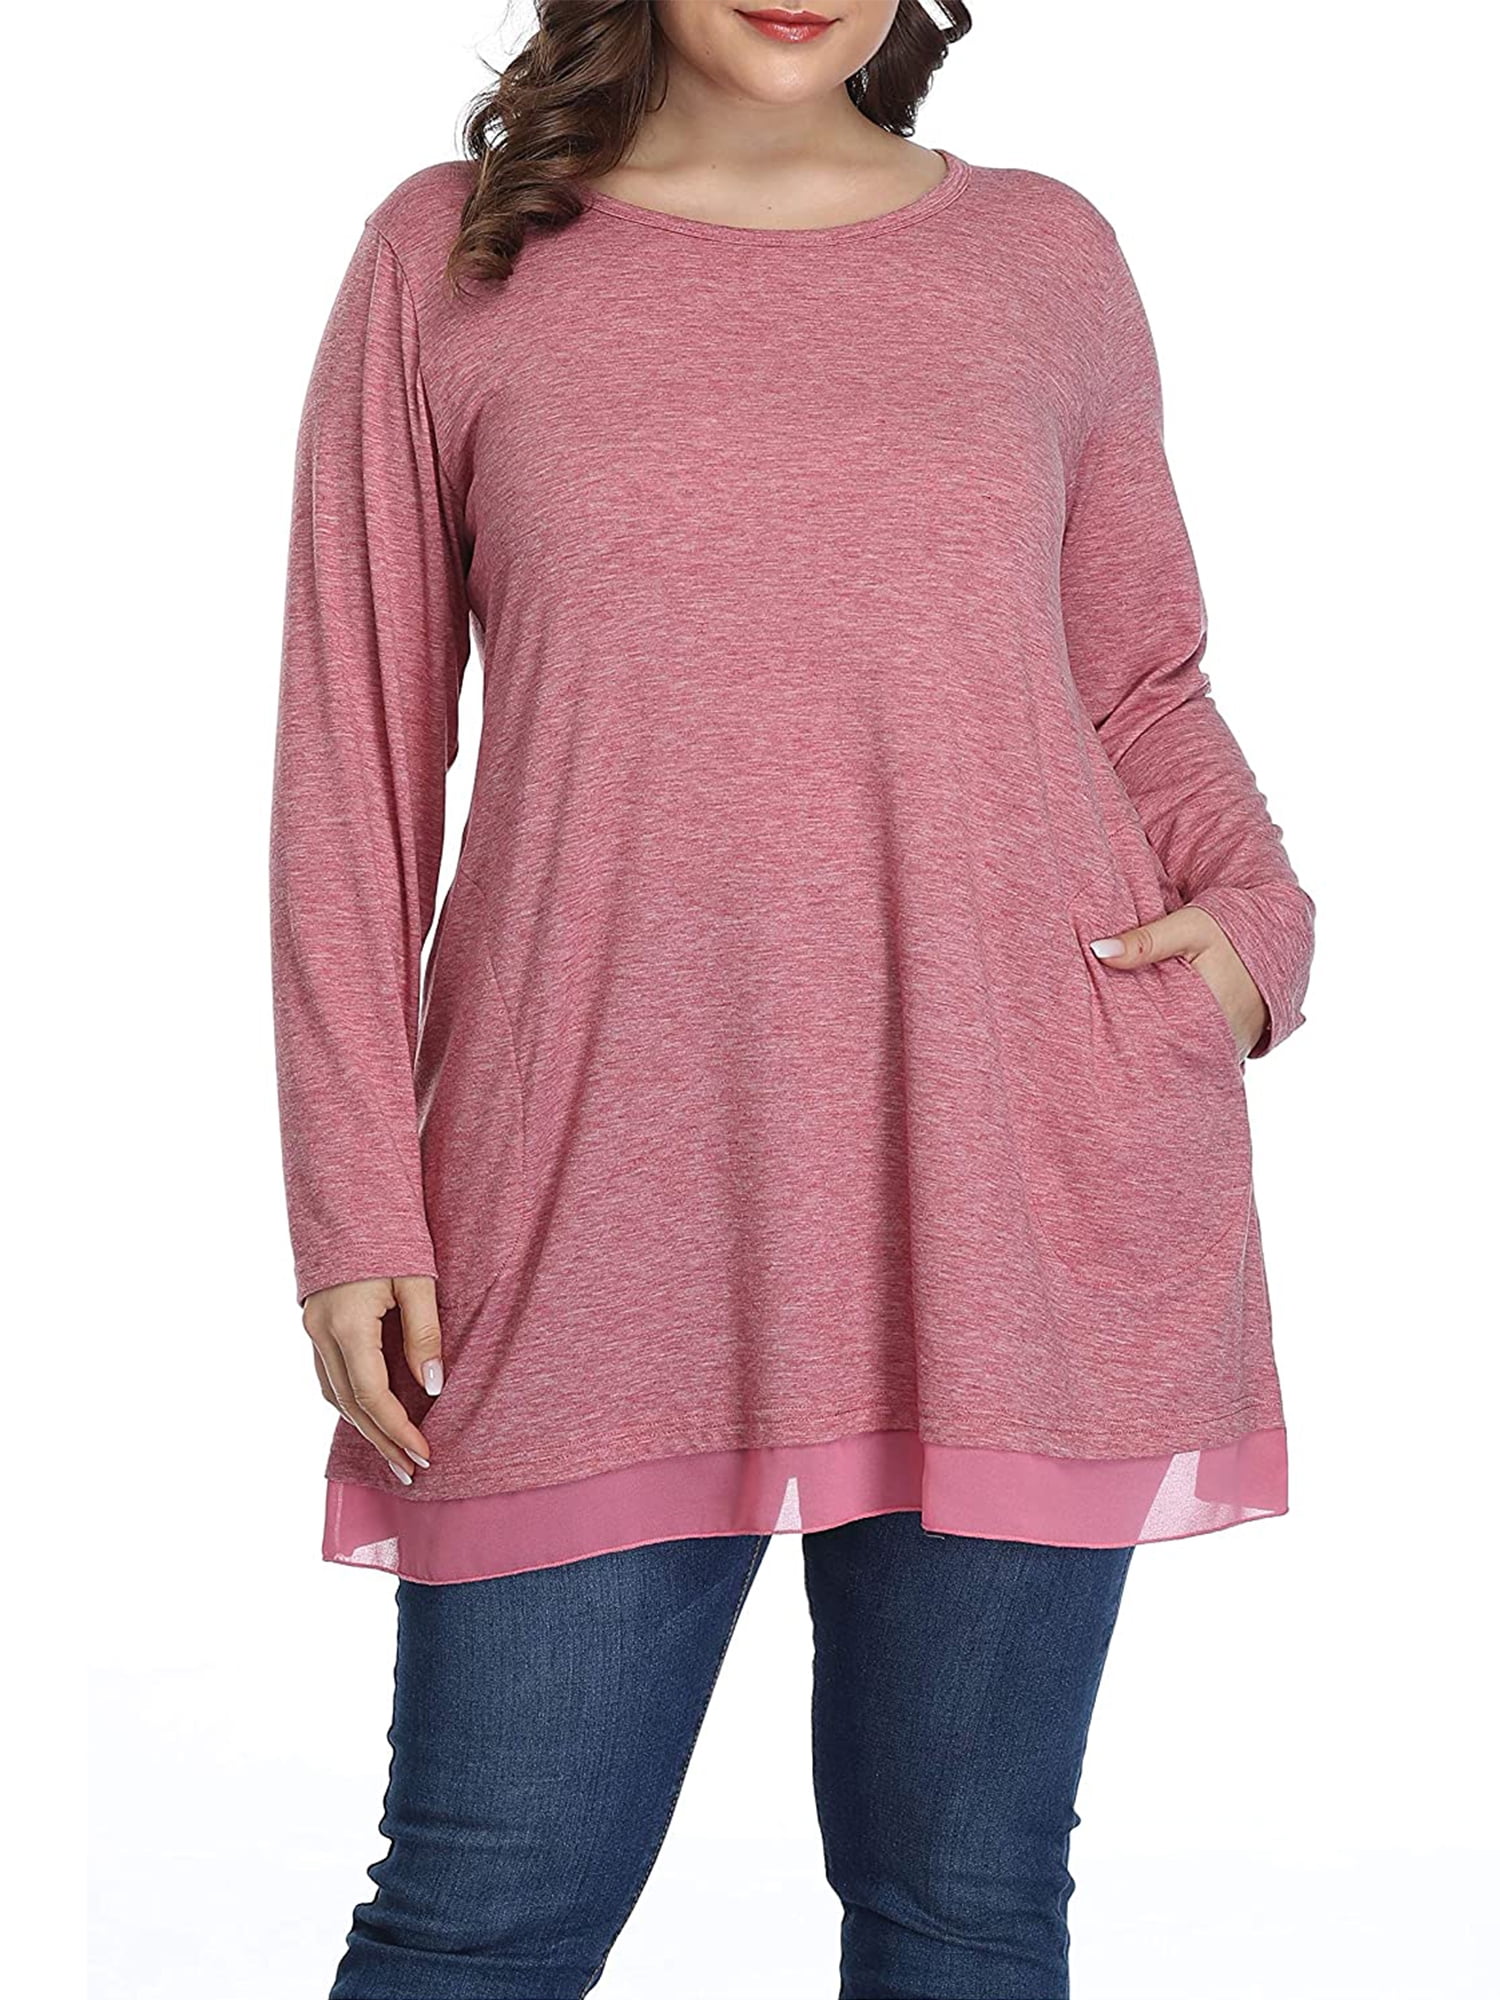 Womens Plus Size Shirts Chiffon Hem Tunic Long Sleeve Casual Cute Blouse Pocket T Shirt for Women - Walmart.com